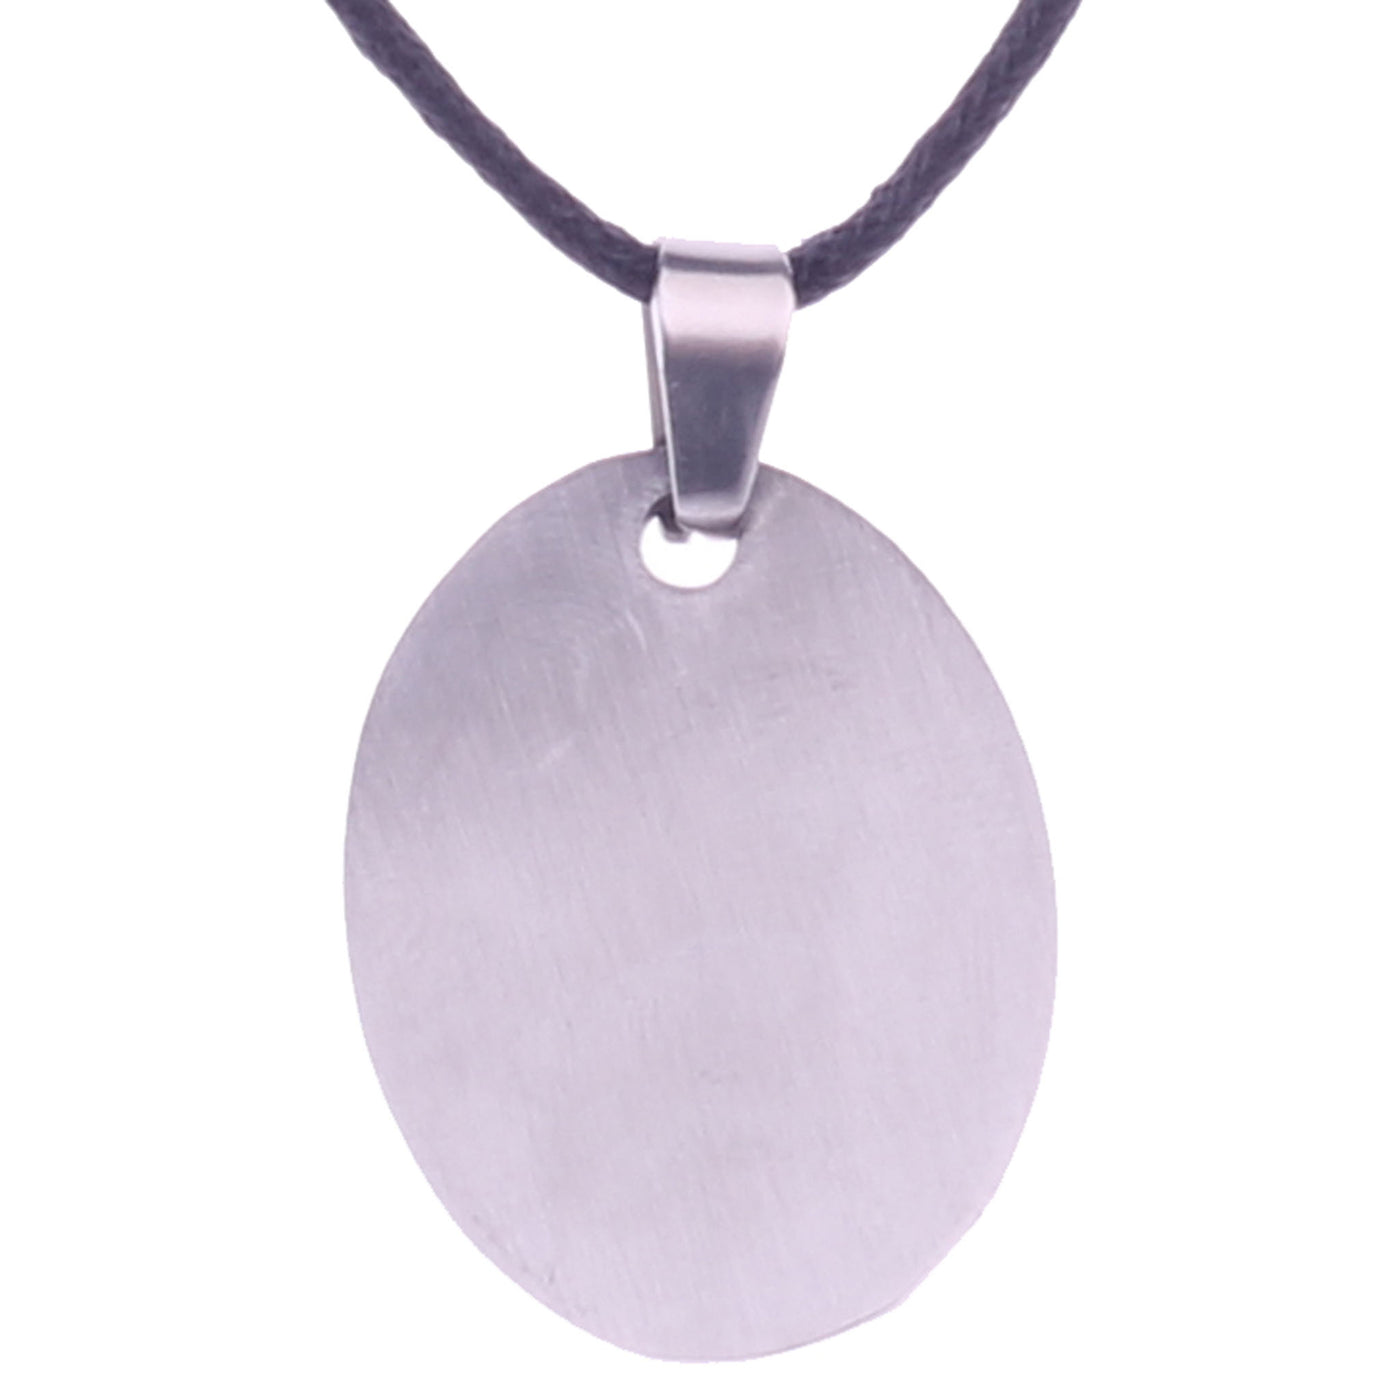 Steel tile pendant